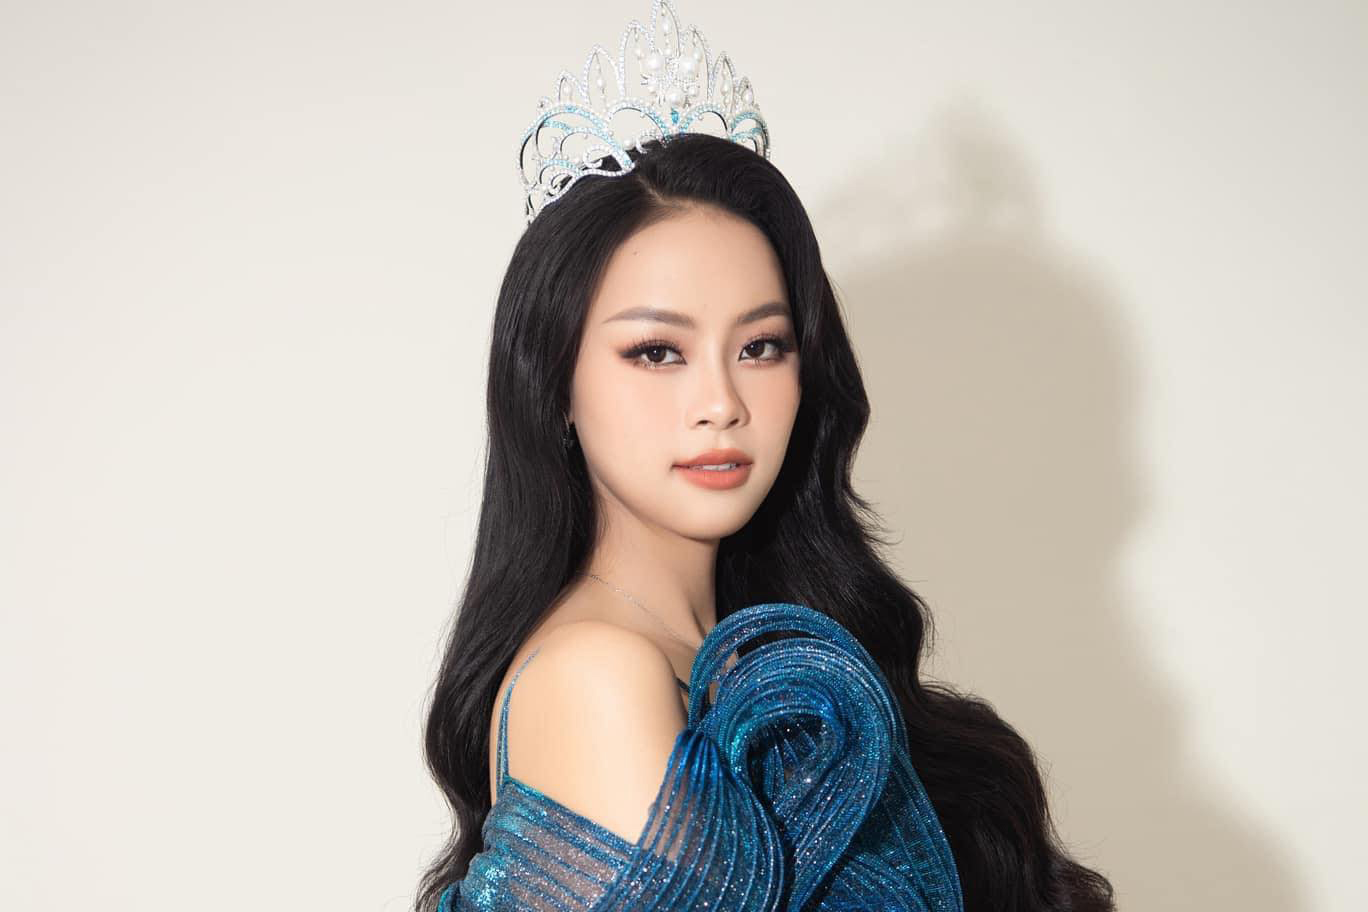 Người đẹp đến từ Nghệ An cũng có những cảm nhận về Hoa hậu Ý Nhi